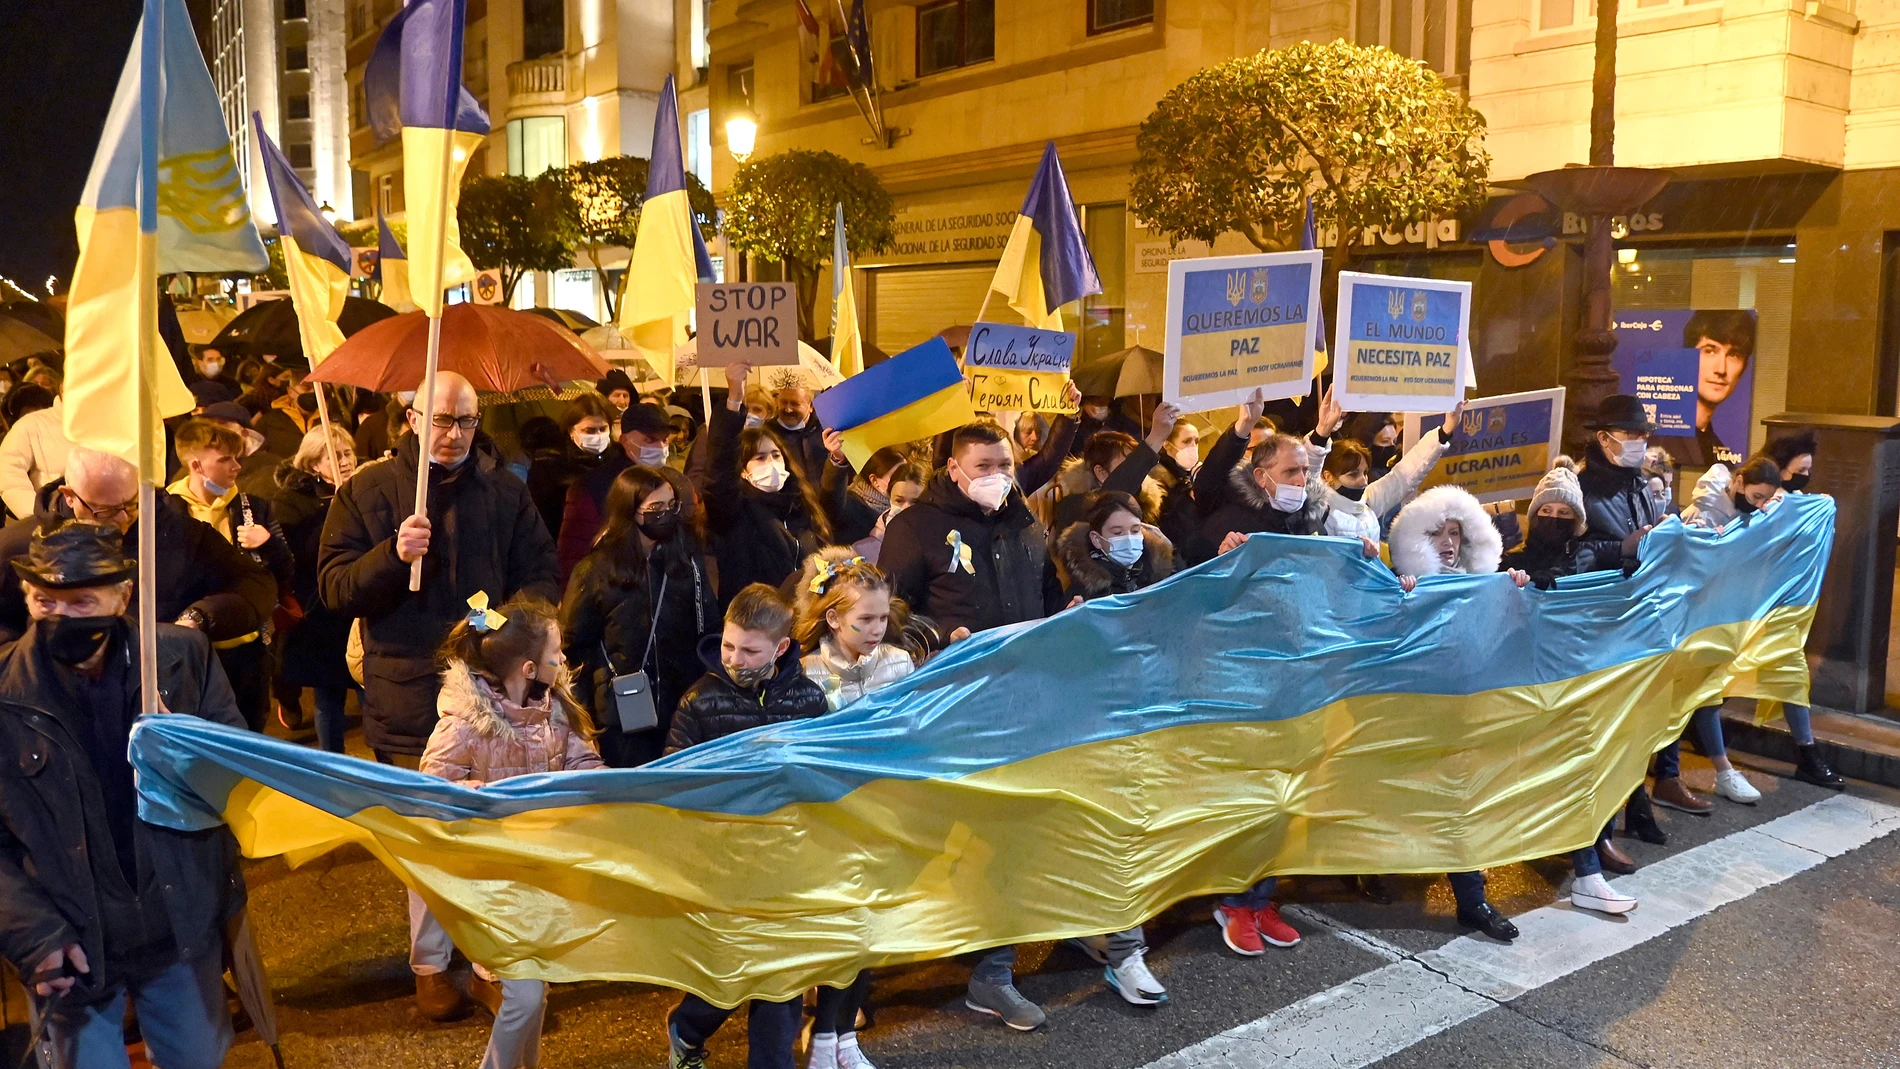 La Comunidad ucraniana convoca en Burgos una manifestación "A favor de la paz"